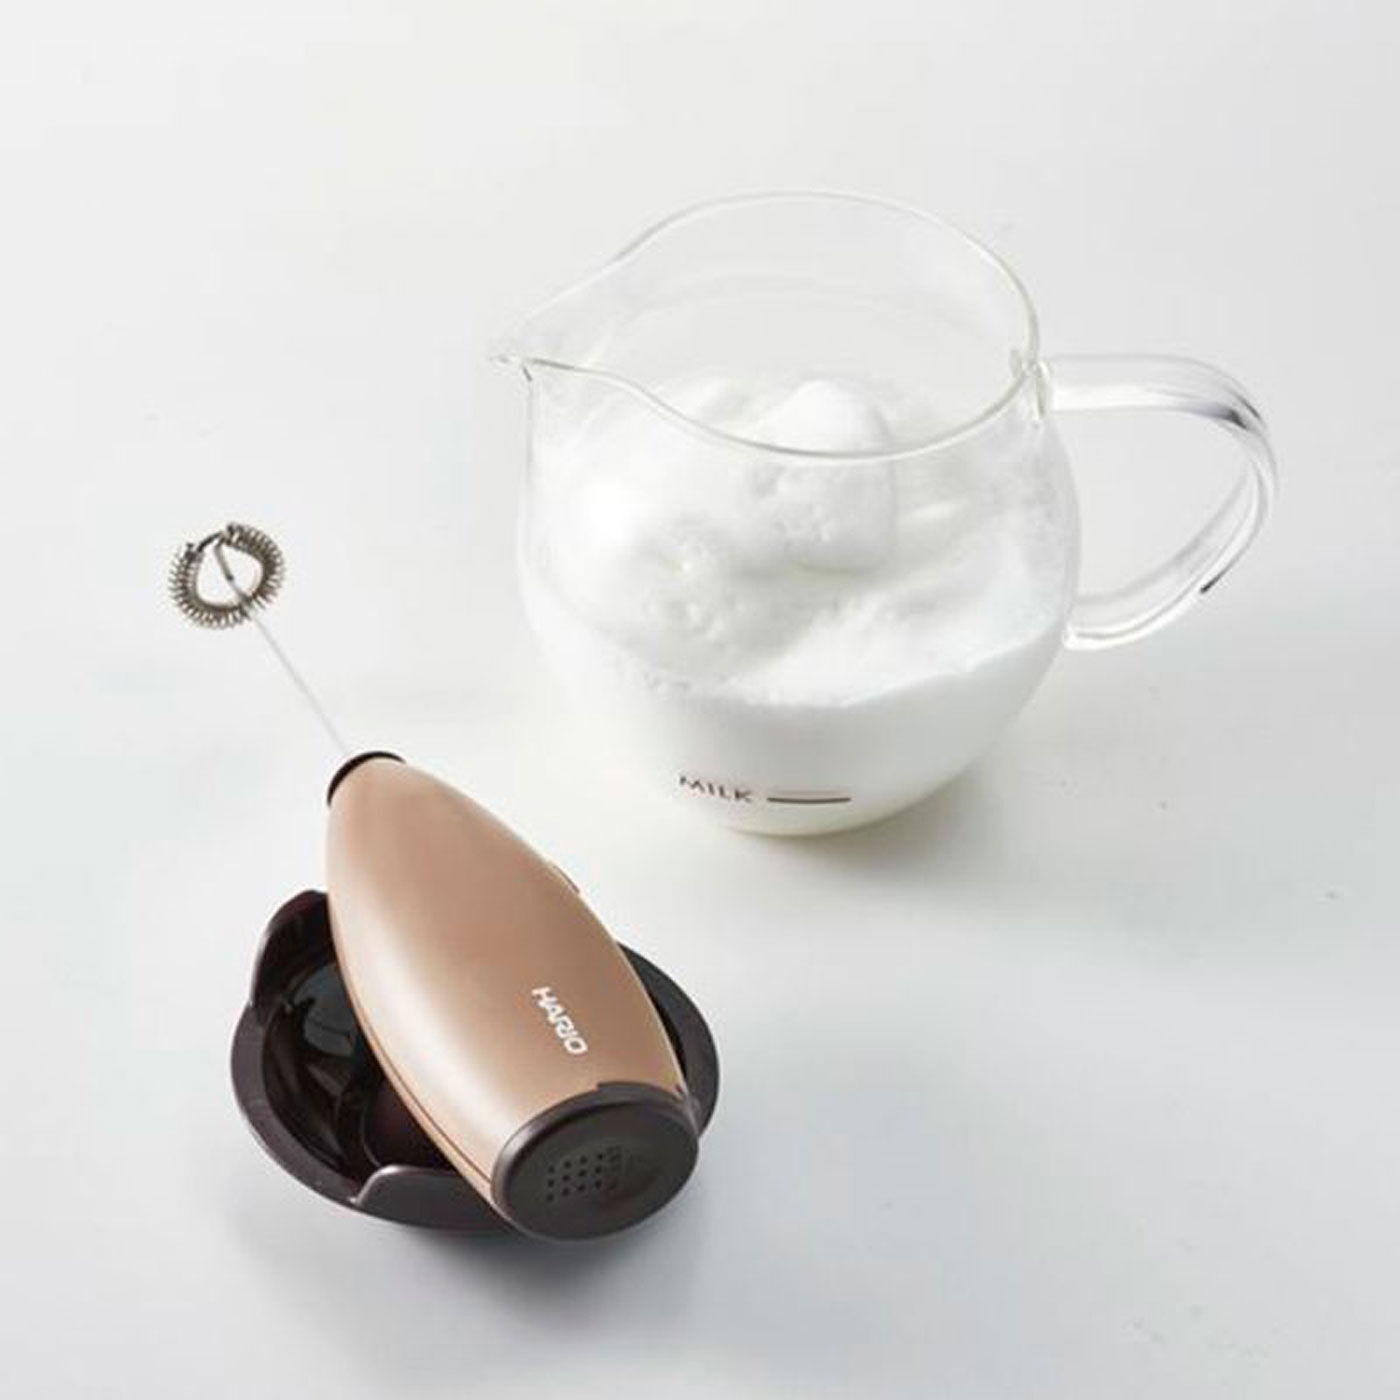 フェリシモの雑貨 クラソ|ふわふわミルクフォームが簡単に 耐熱ガラスボウル付きミルククリーマー|きめ細かく滑らかなミルクフォームの完成